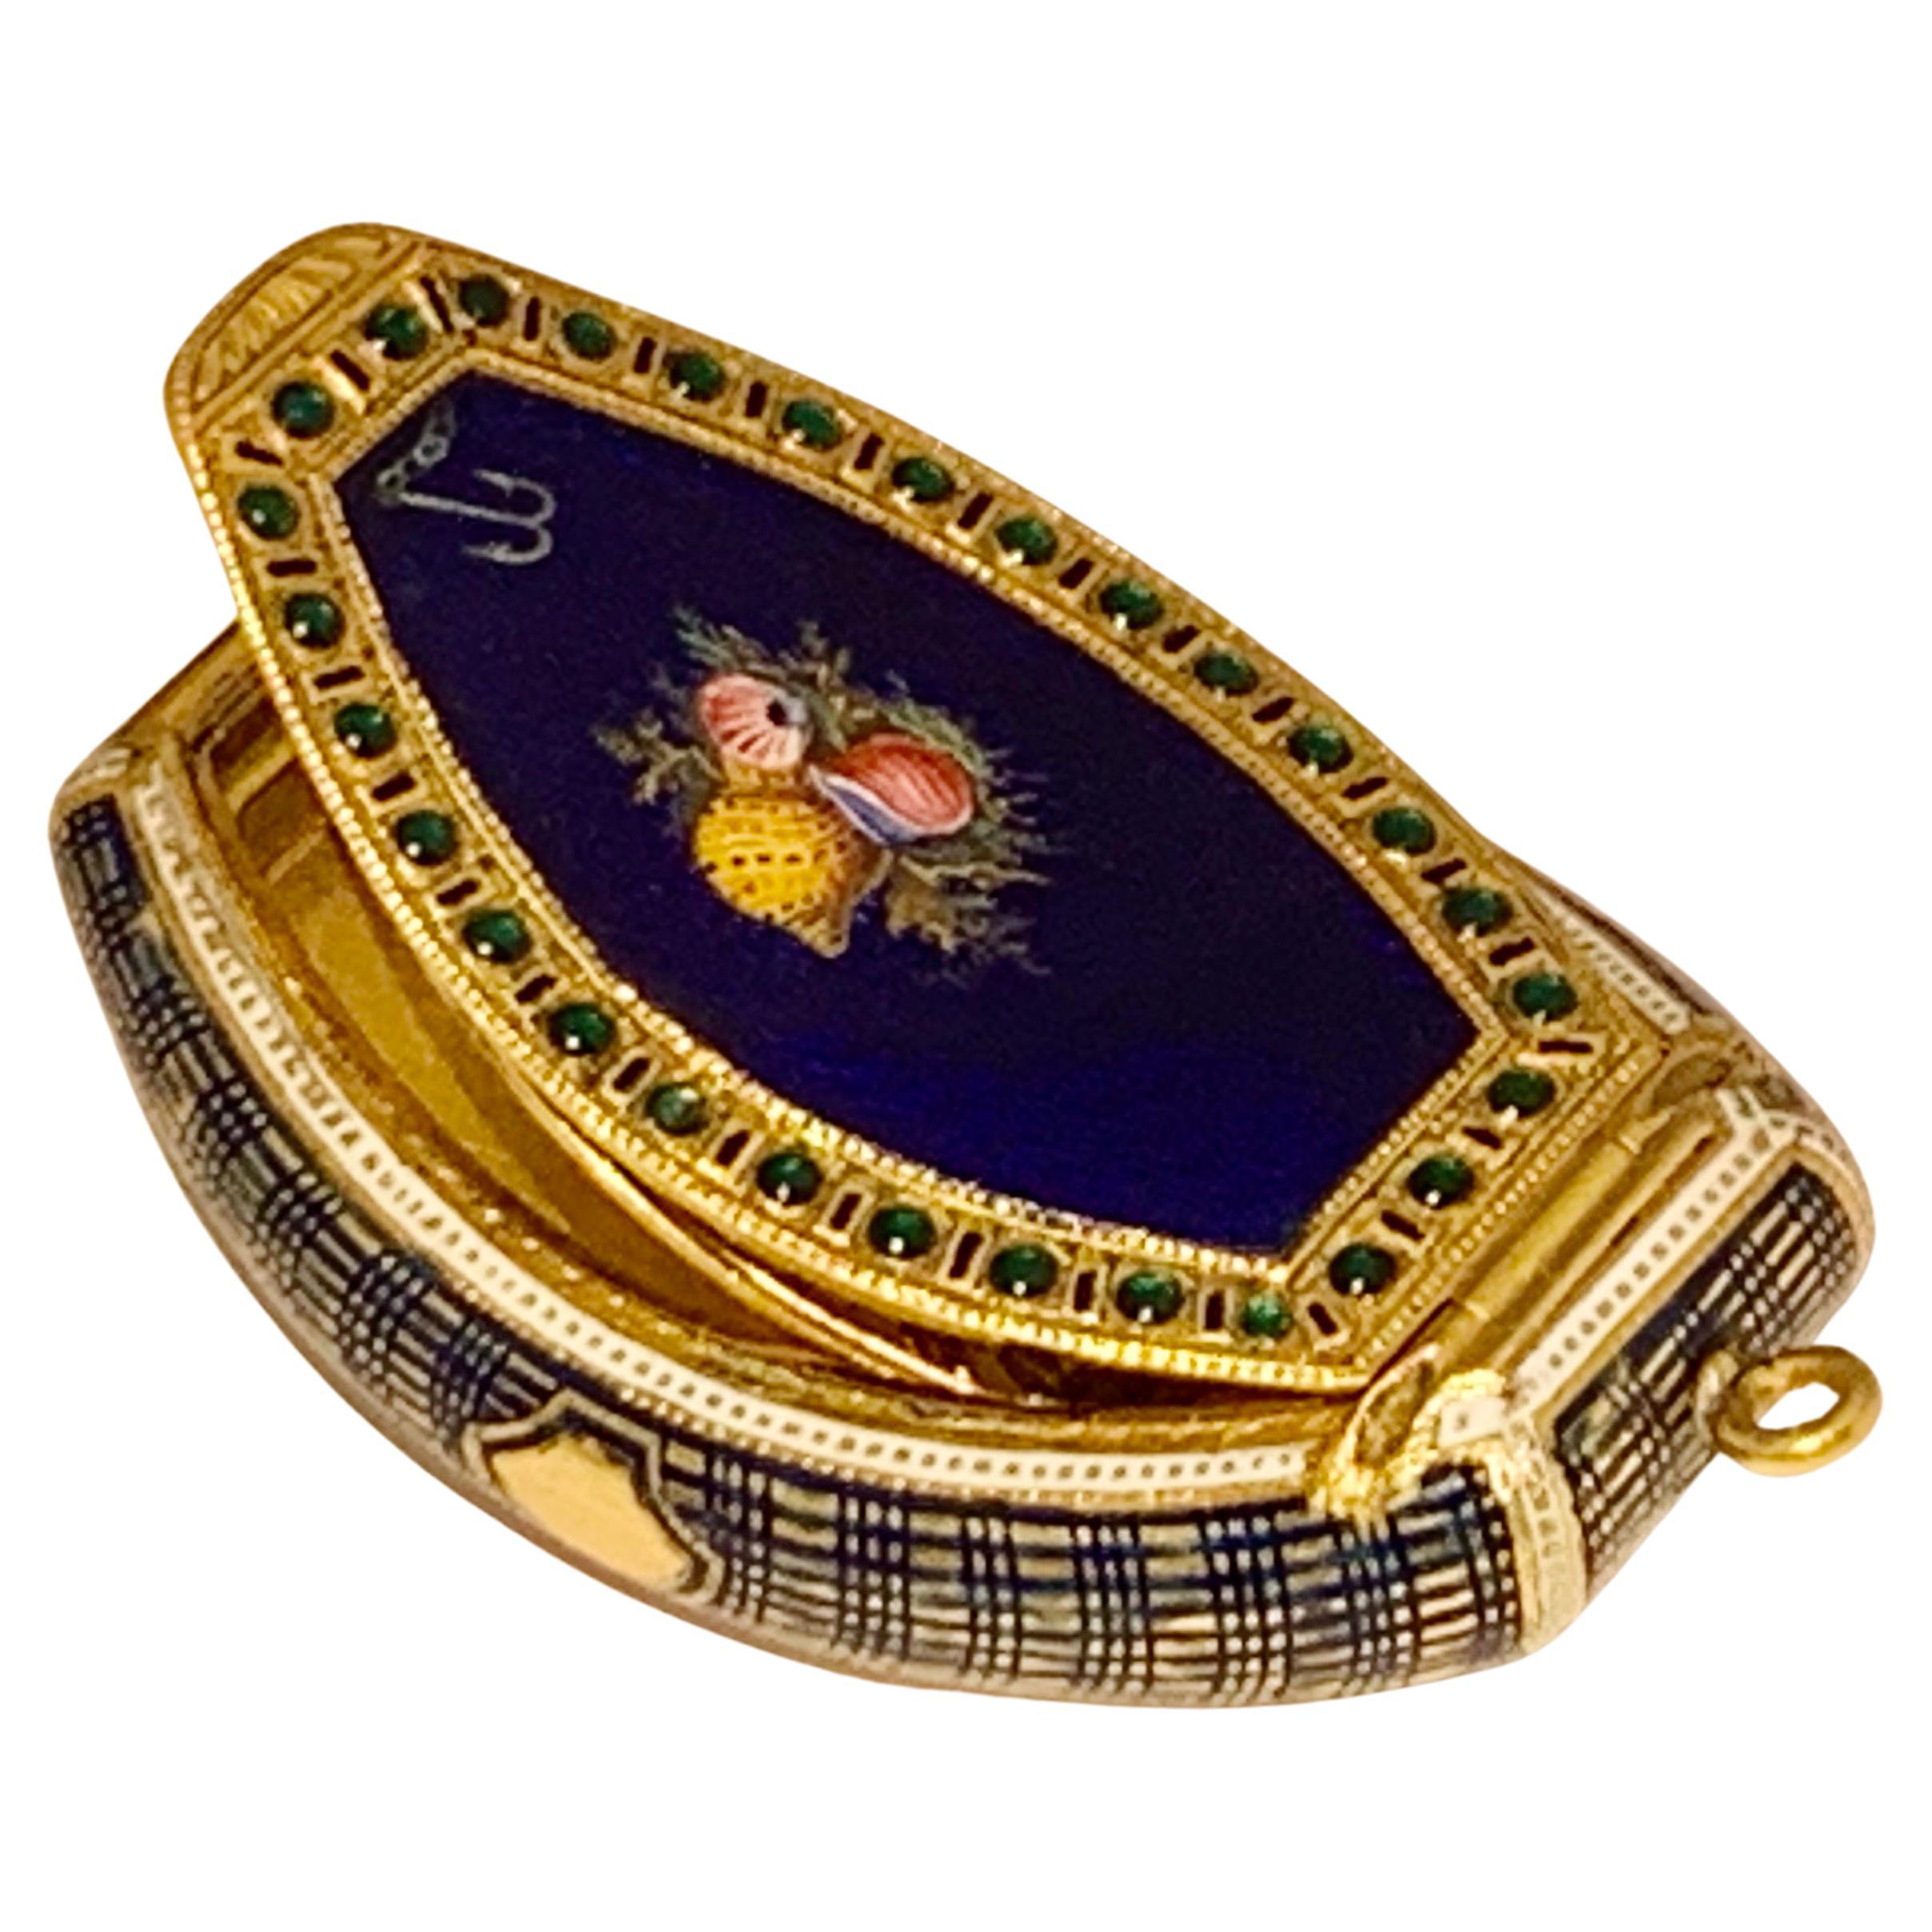 Rare boîte suisse Vinaigrette ornée de bijoux en émail et or fin 18e siècle